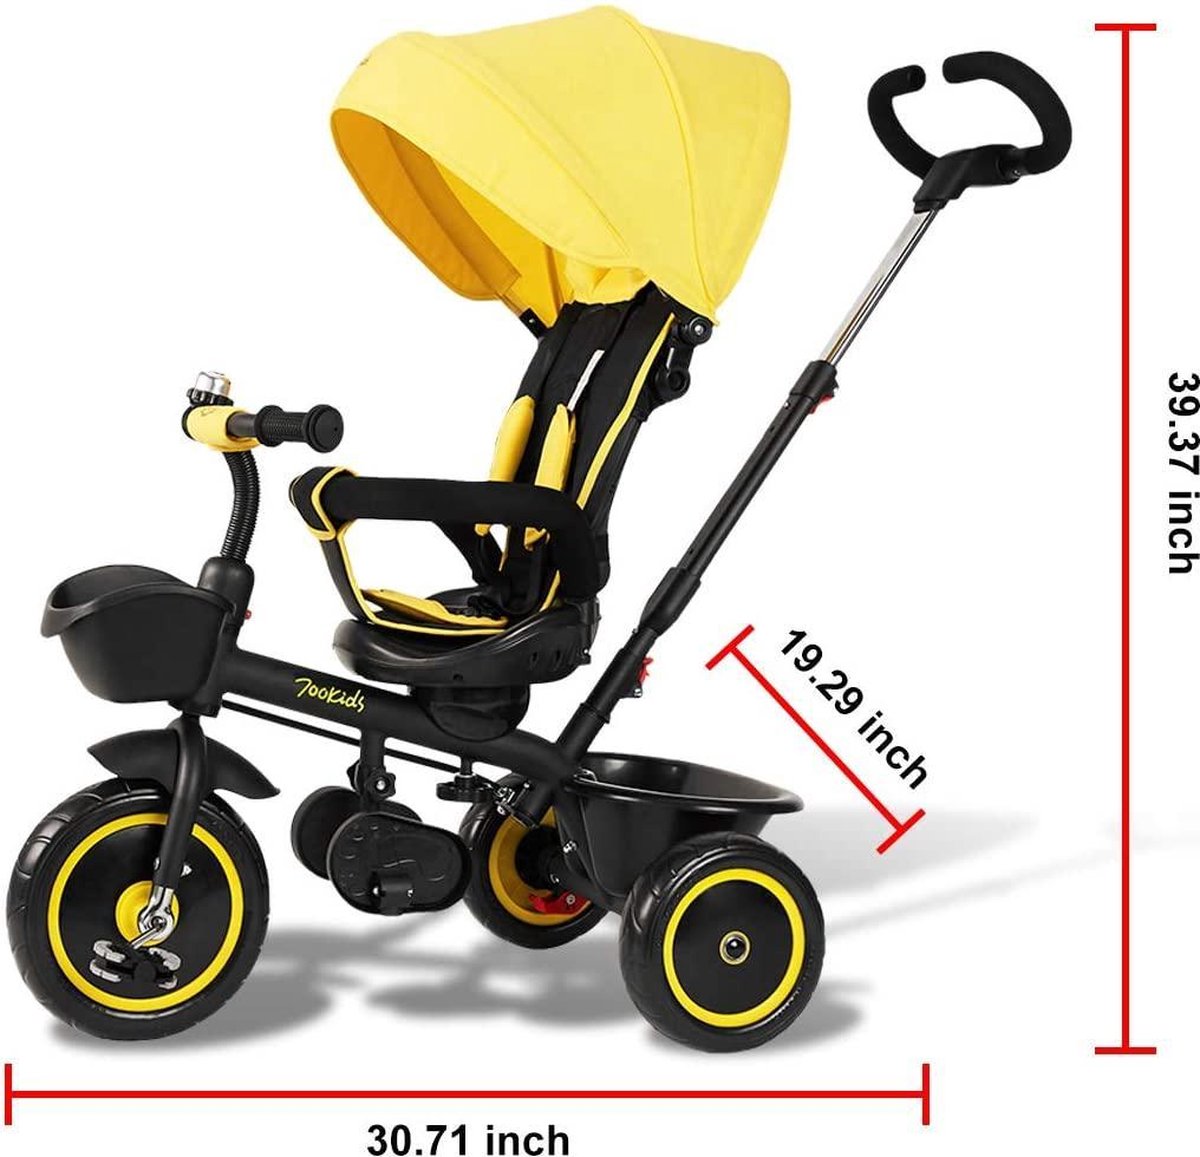 FableKids® Tricycle 7in1 Tricycle enfant guidon vélo bébé poussette Gris